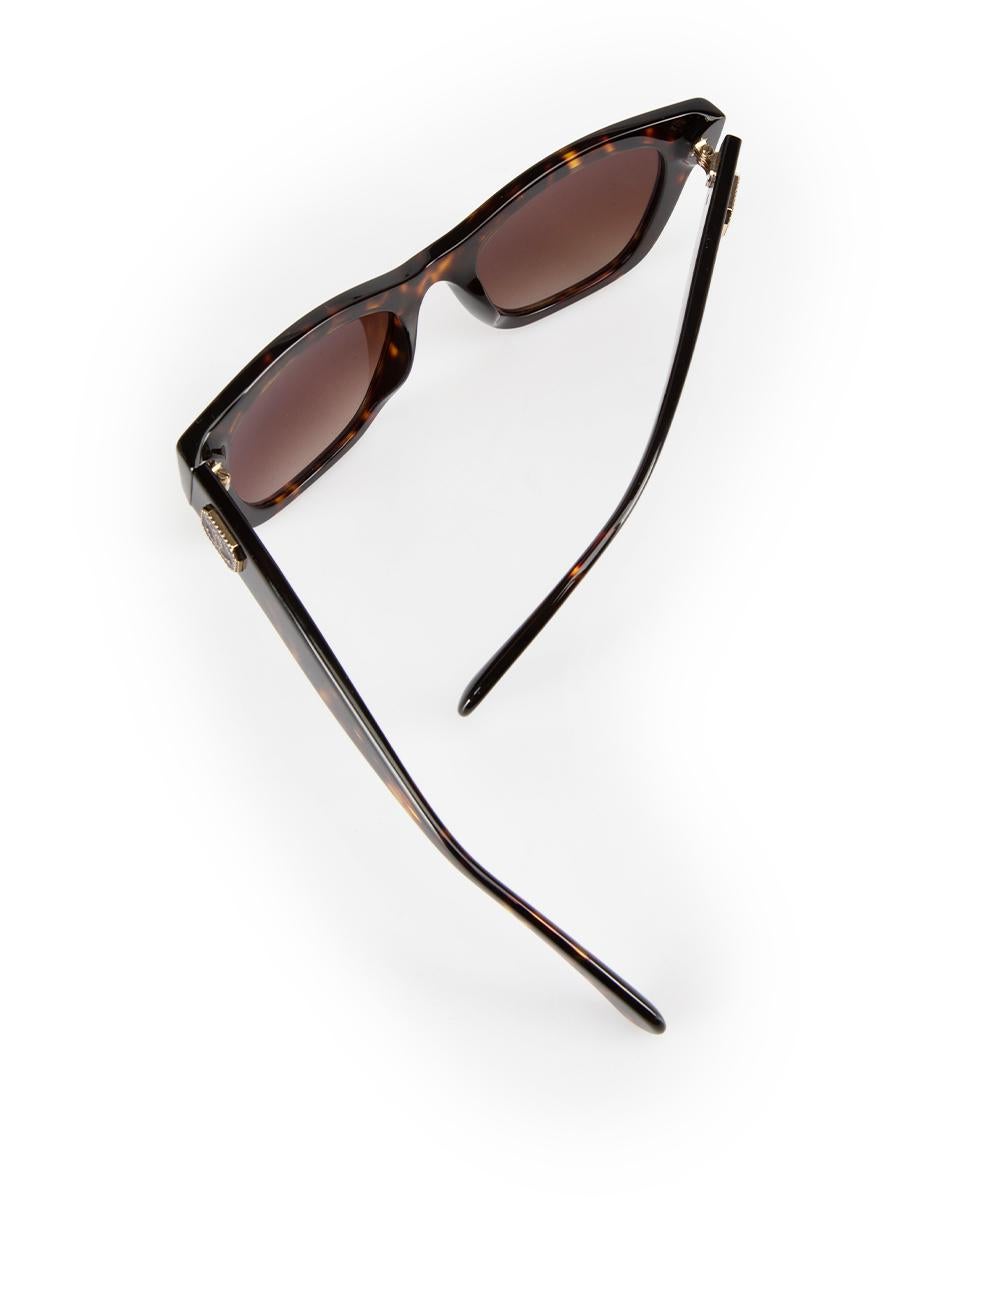 Chanel Dark Tortoise Square Sunglasses For Sale 3